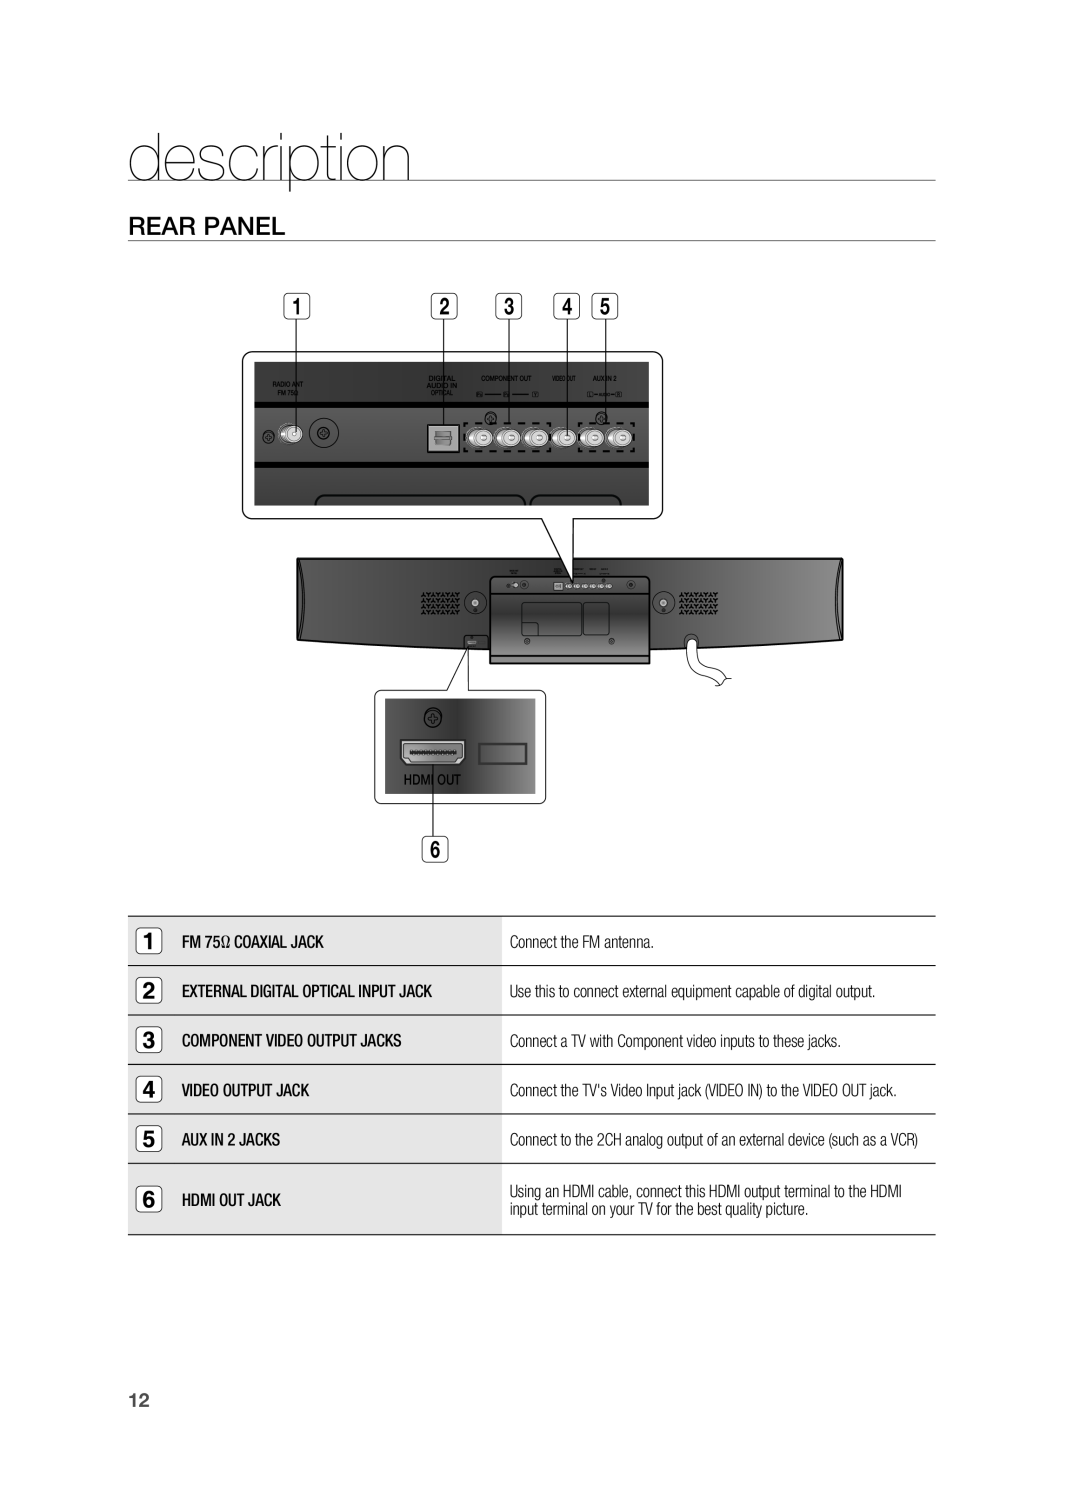 Samsung HT-X810 Rear Panel, description, FM 75Ω COAXIAL JACK, Connect the FM antenna, Component Video Output Jacks 